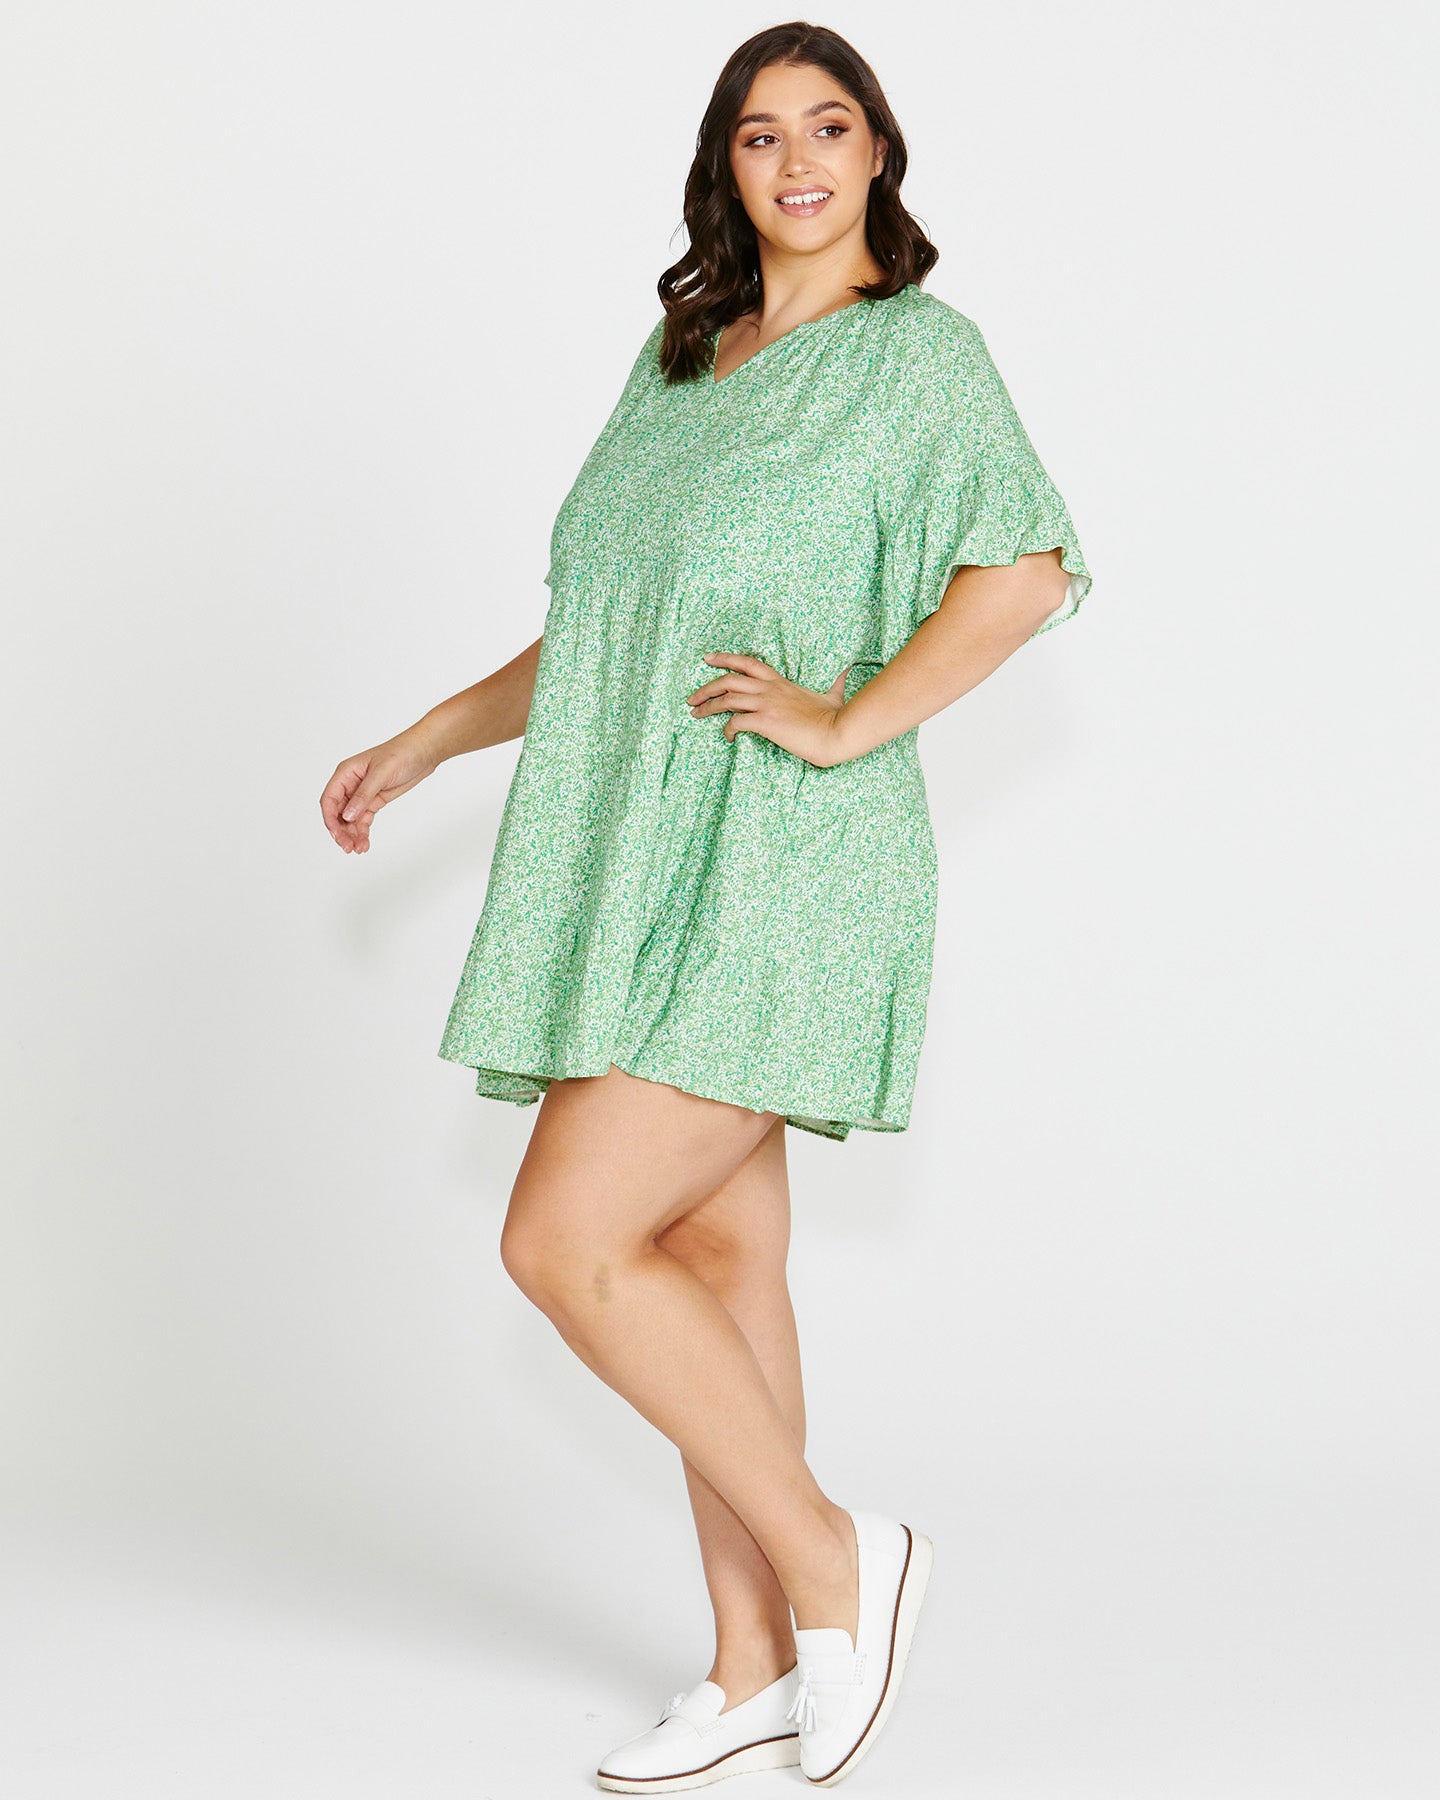 Sally Frill Sleeve Above-Knee Summer Linen-Blend Dress - Green Wild Animal Print